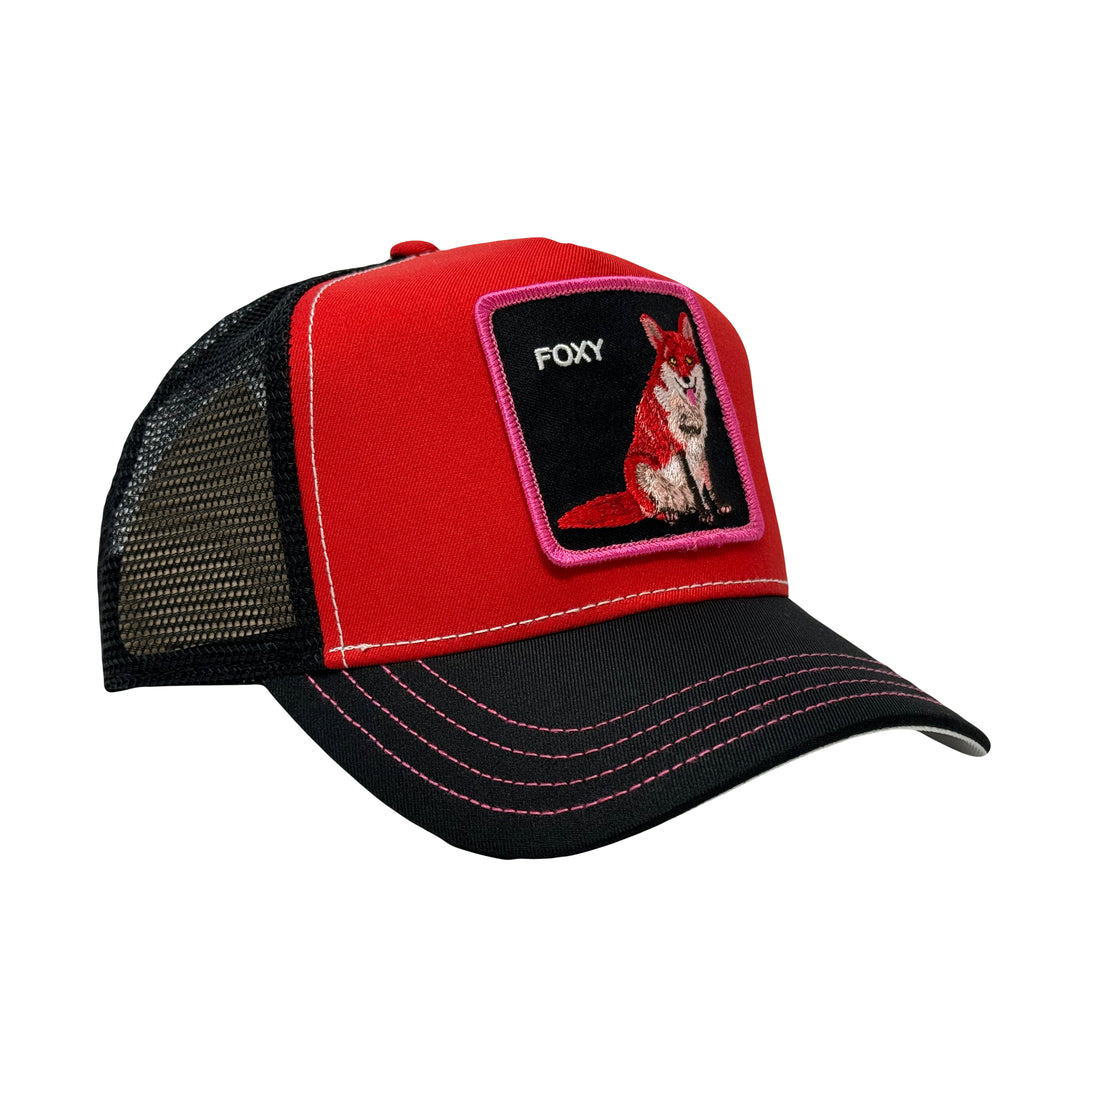 Goorin Bros Fox Trip Trucker Hat